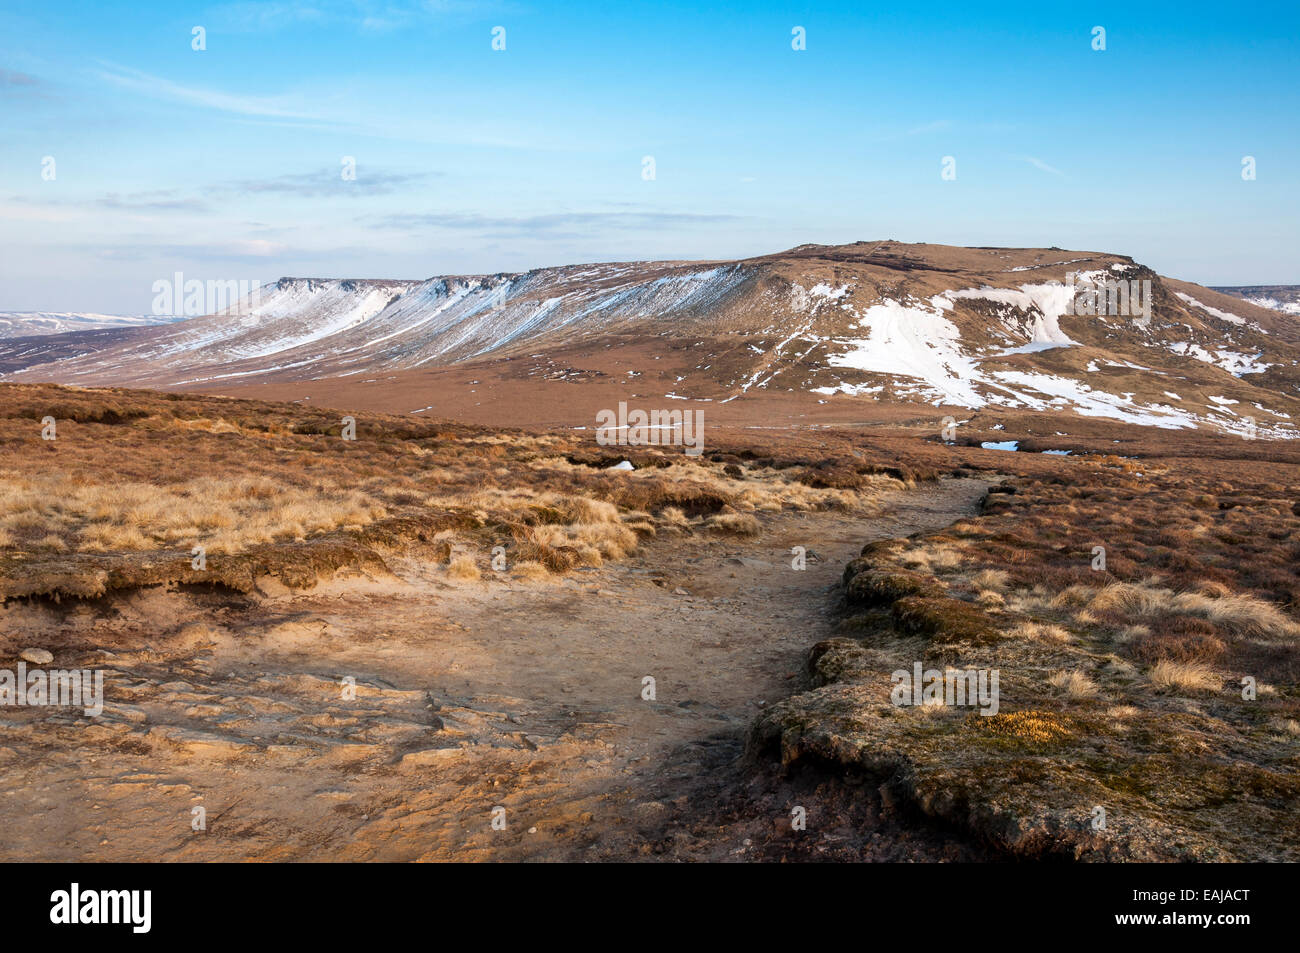 Drammatico paesaggio di brughiera con vista al Kinder Scout altopiano. Resti di tardo inverno neve. Foto Stock